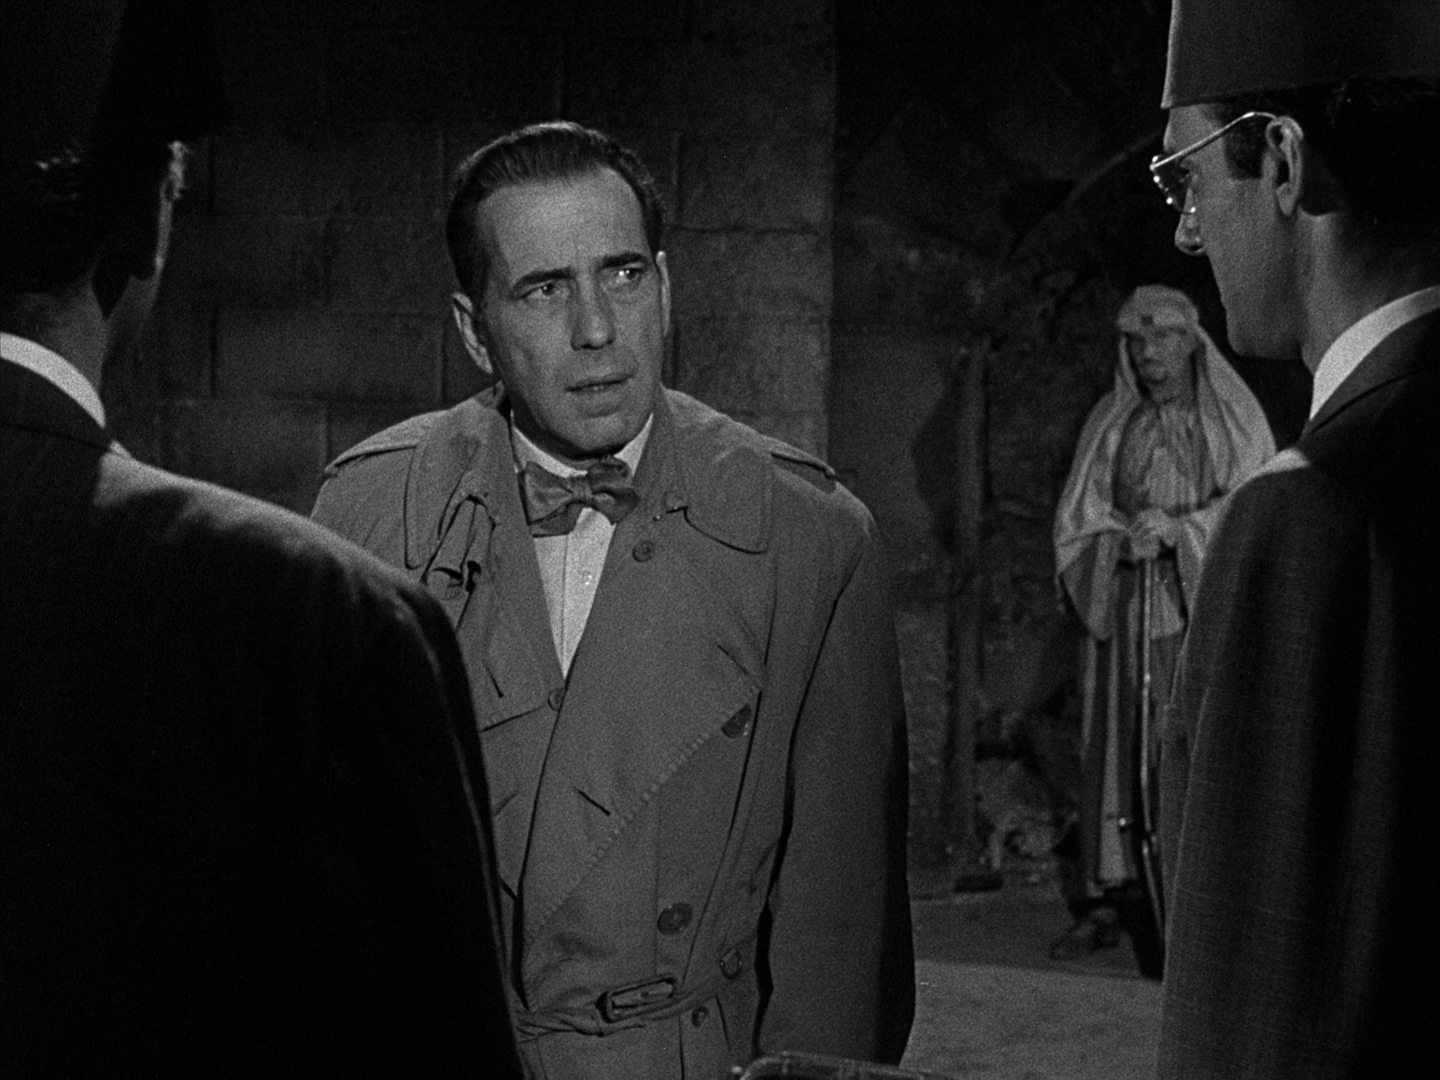 Schwarz-Weiß-Szene mit Humphrey Bogart als Schmuggler in dubioser Umgebung im Gespräch. 